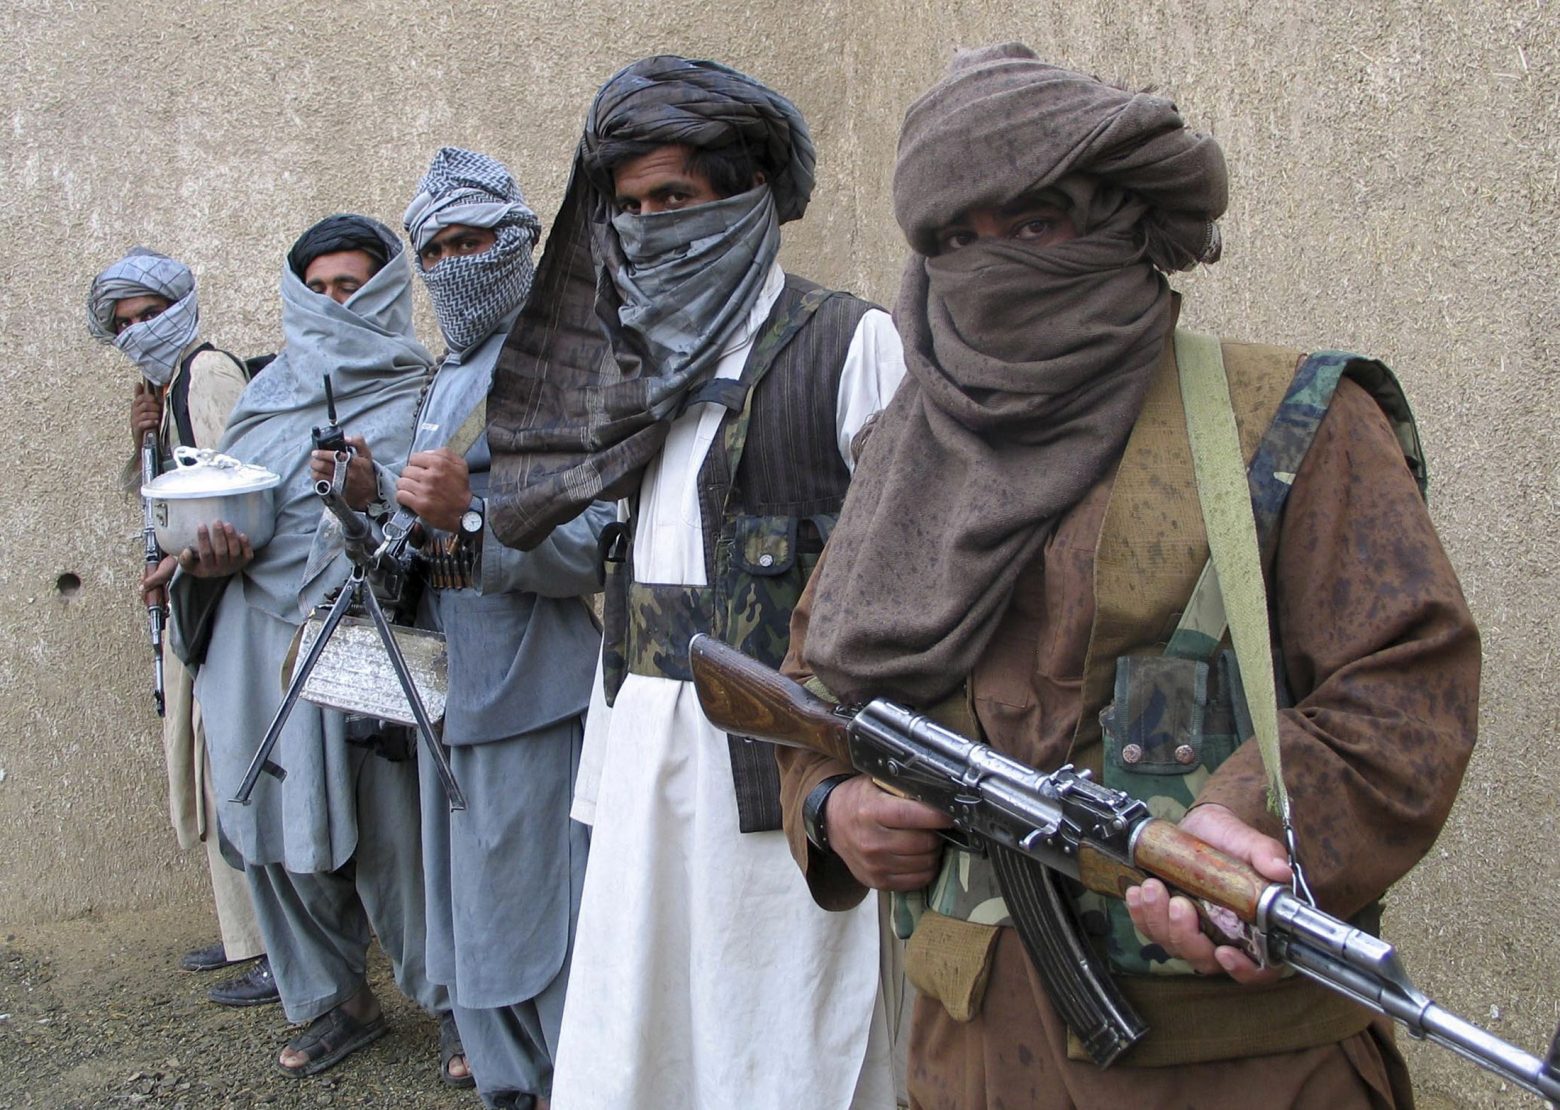 Ποιοι είναι οι Ταλιμπάν και πως ανακατέλαβαν την εξουσία - Ειδήσεις - νέα -  Το Βήμα Online